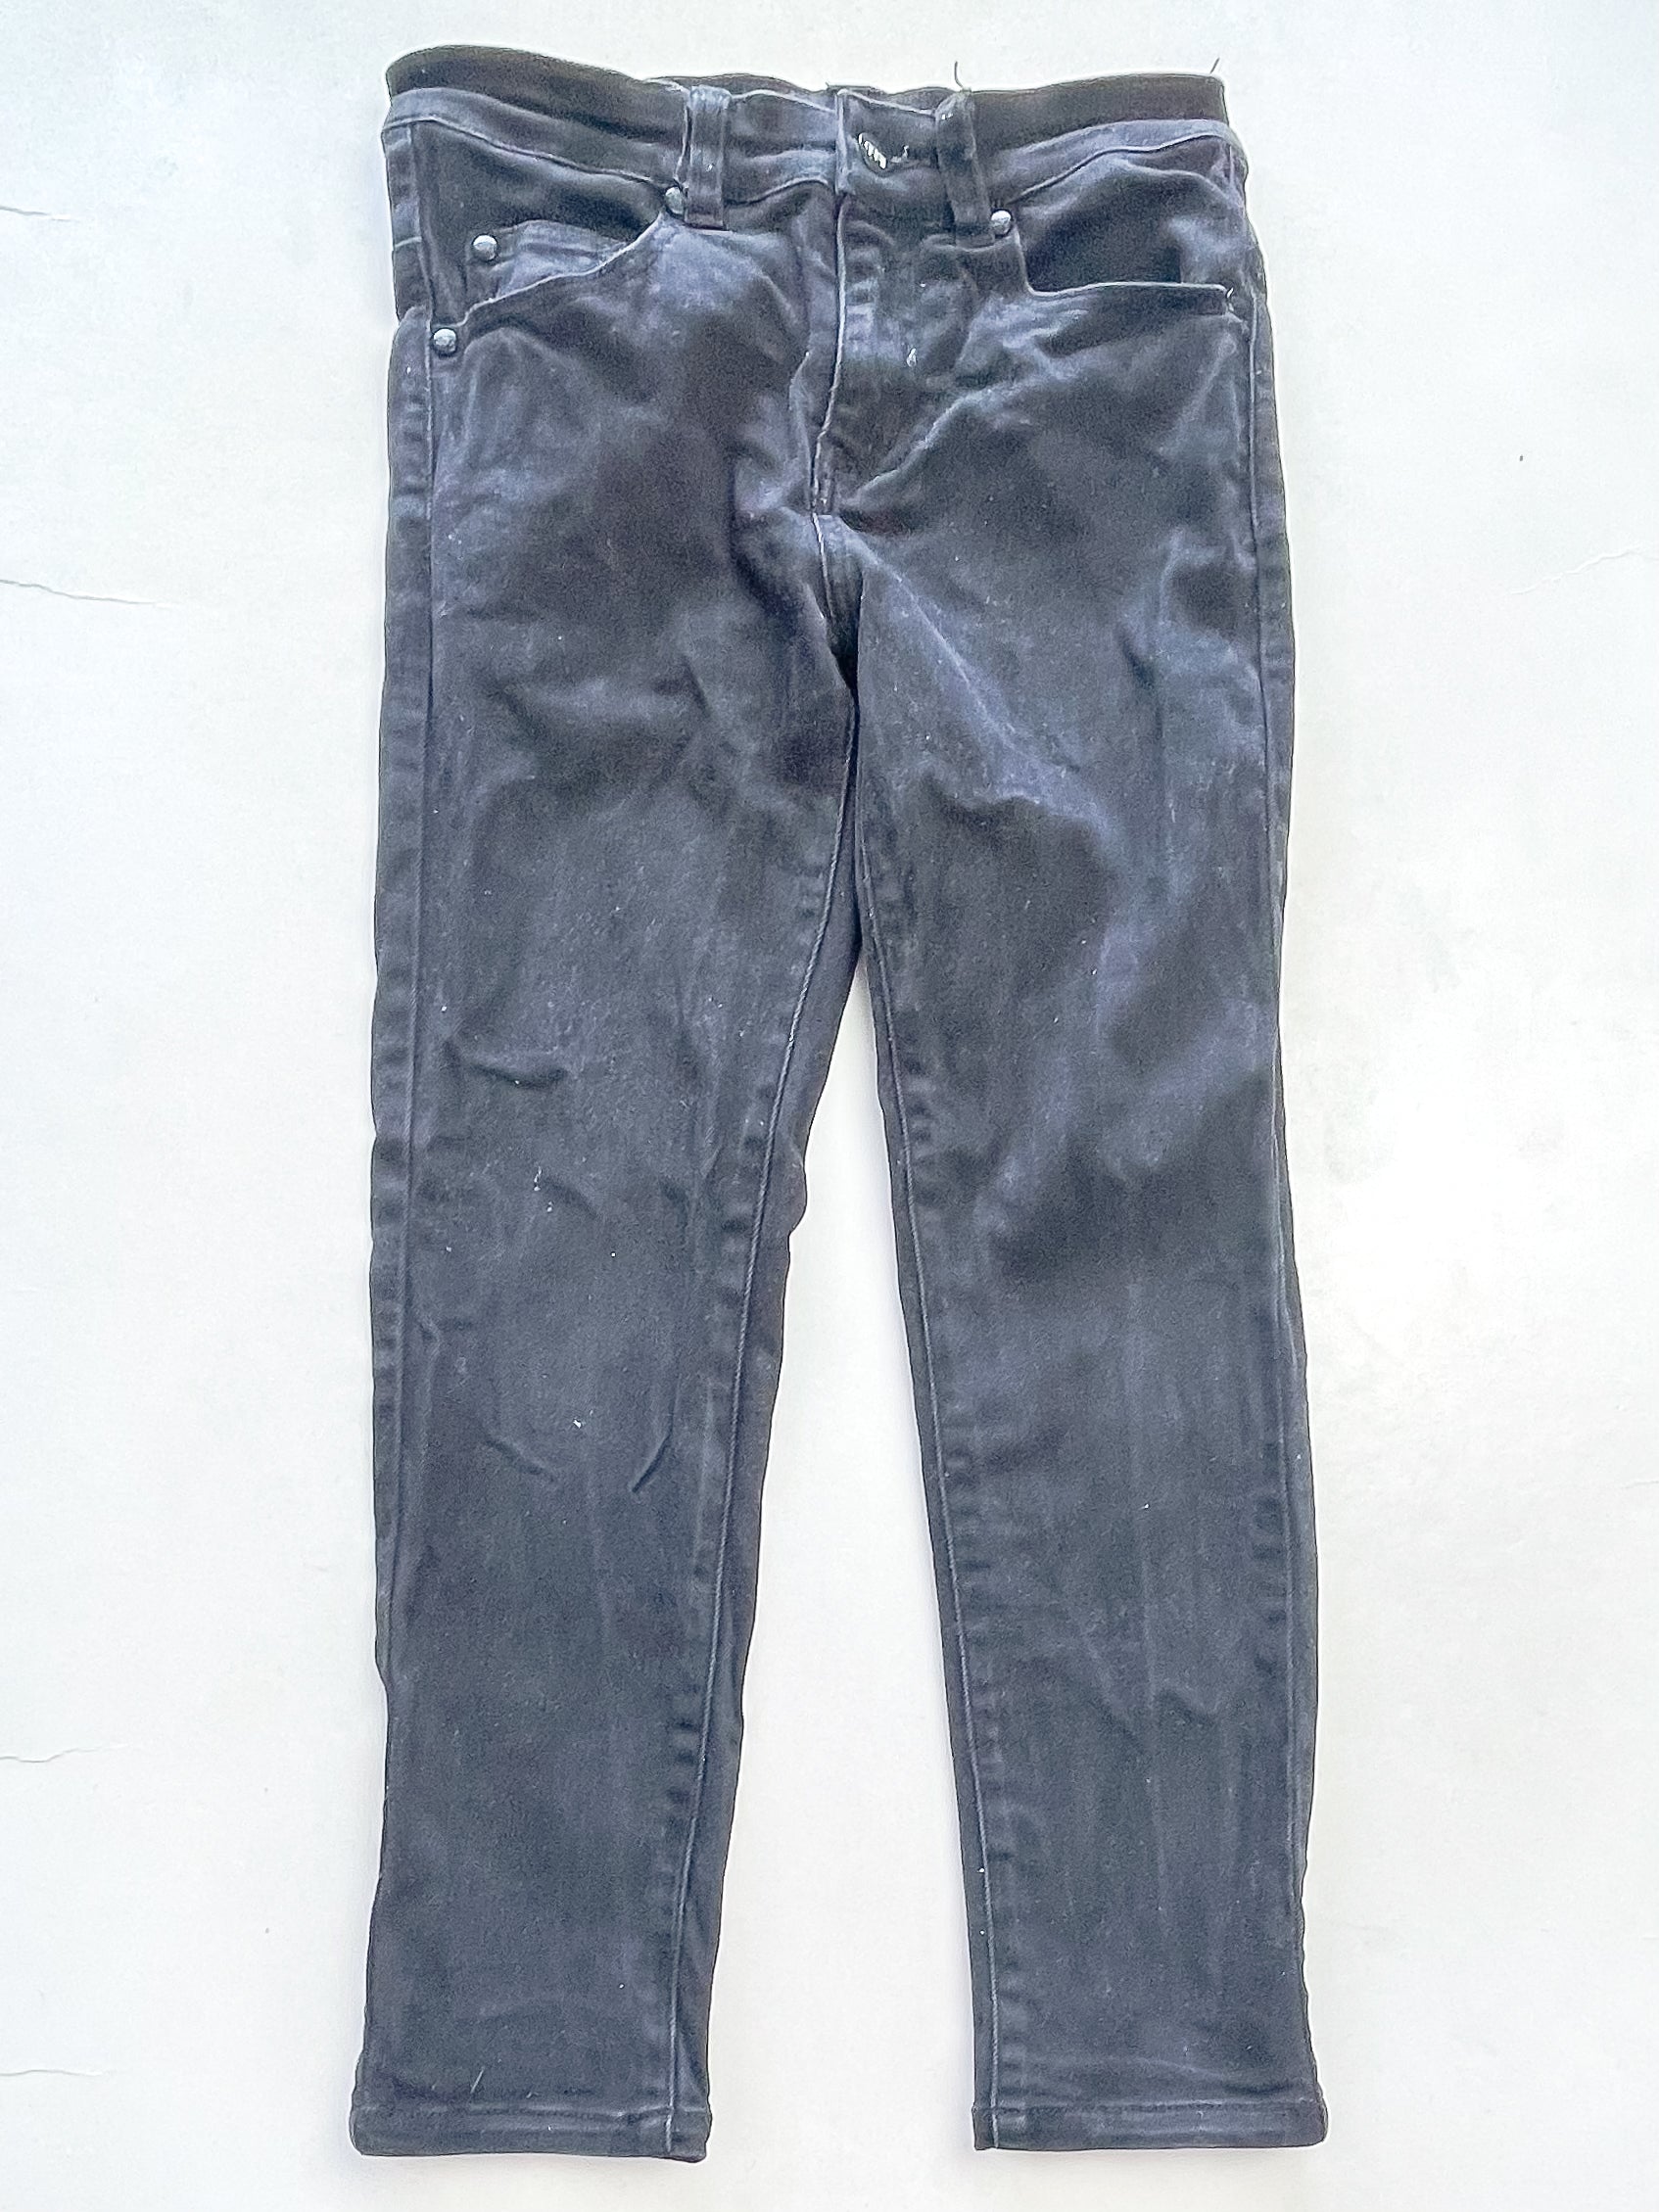 Ilabb denim jeans (10y)